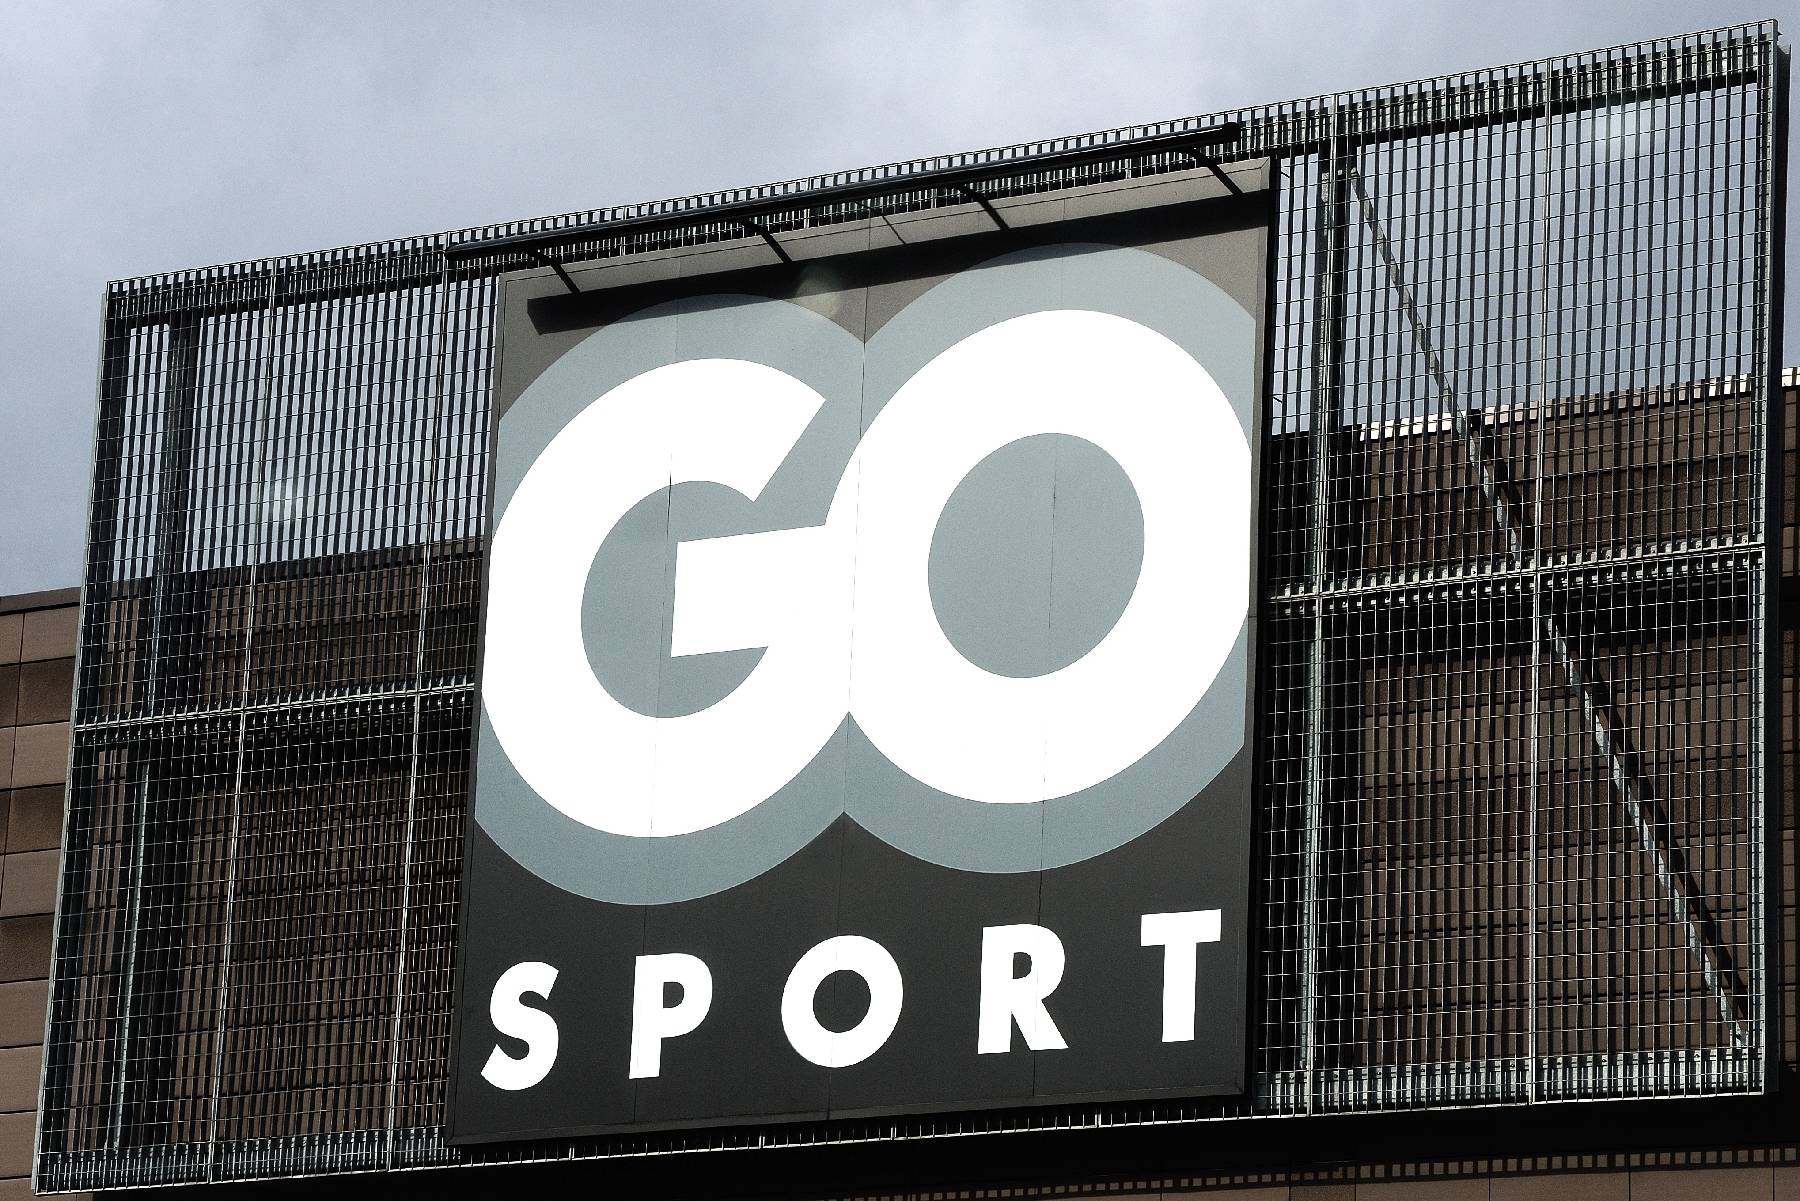 Go Sport: décision du tribunal de commerce de Grenoble mercredi